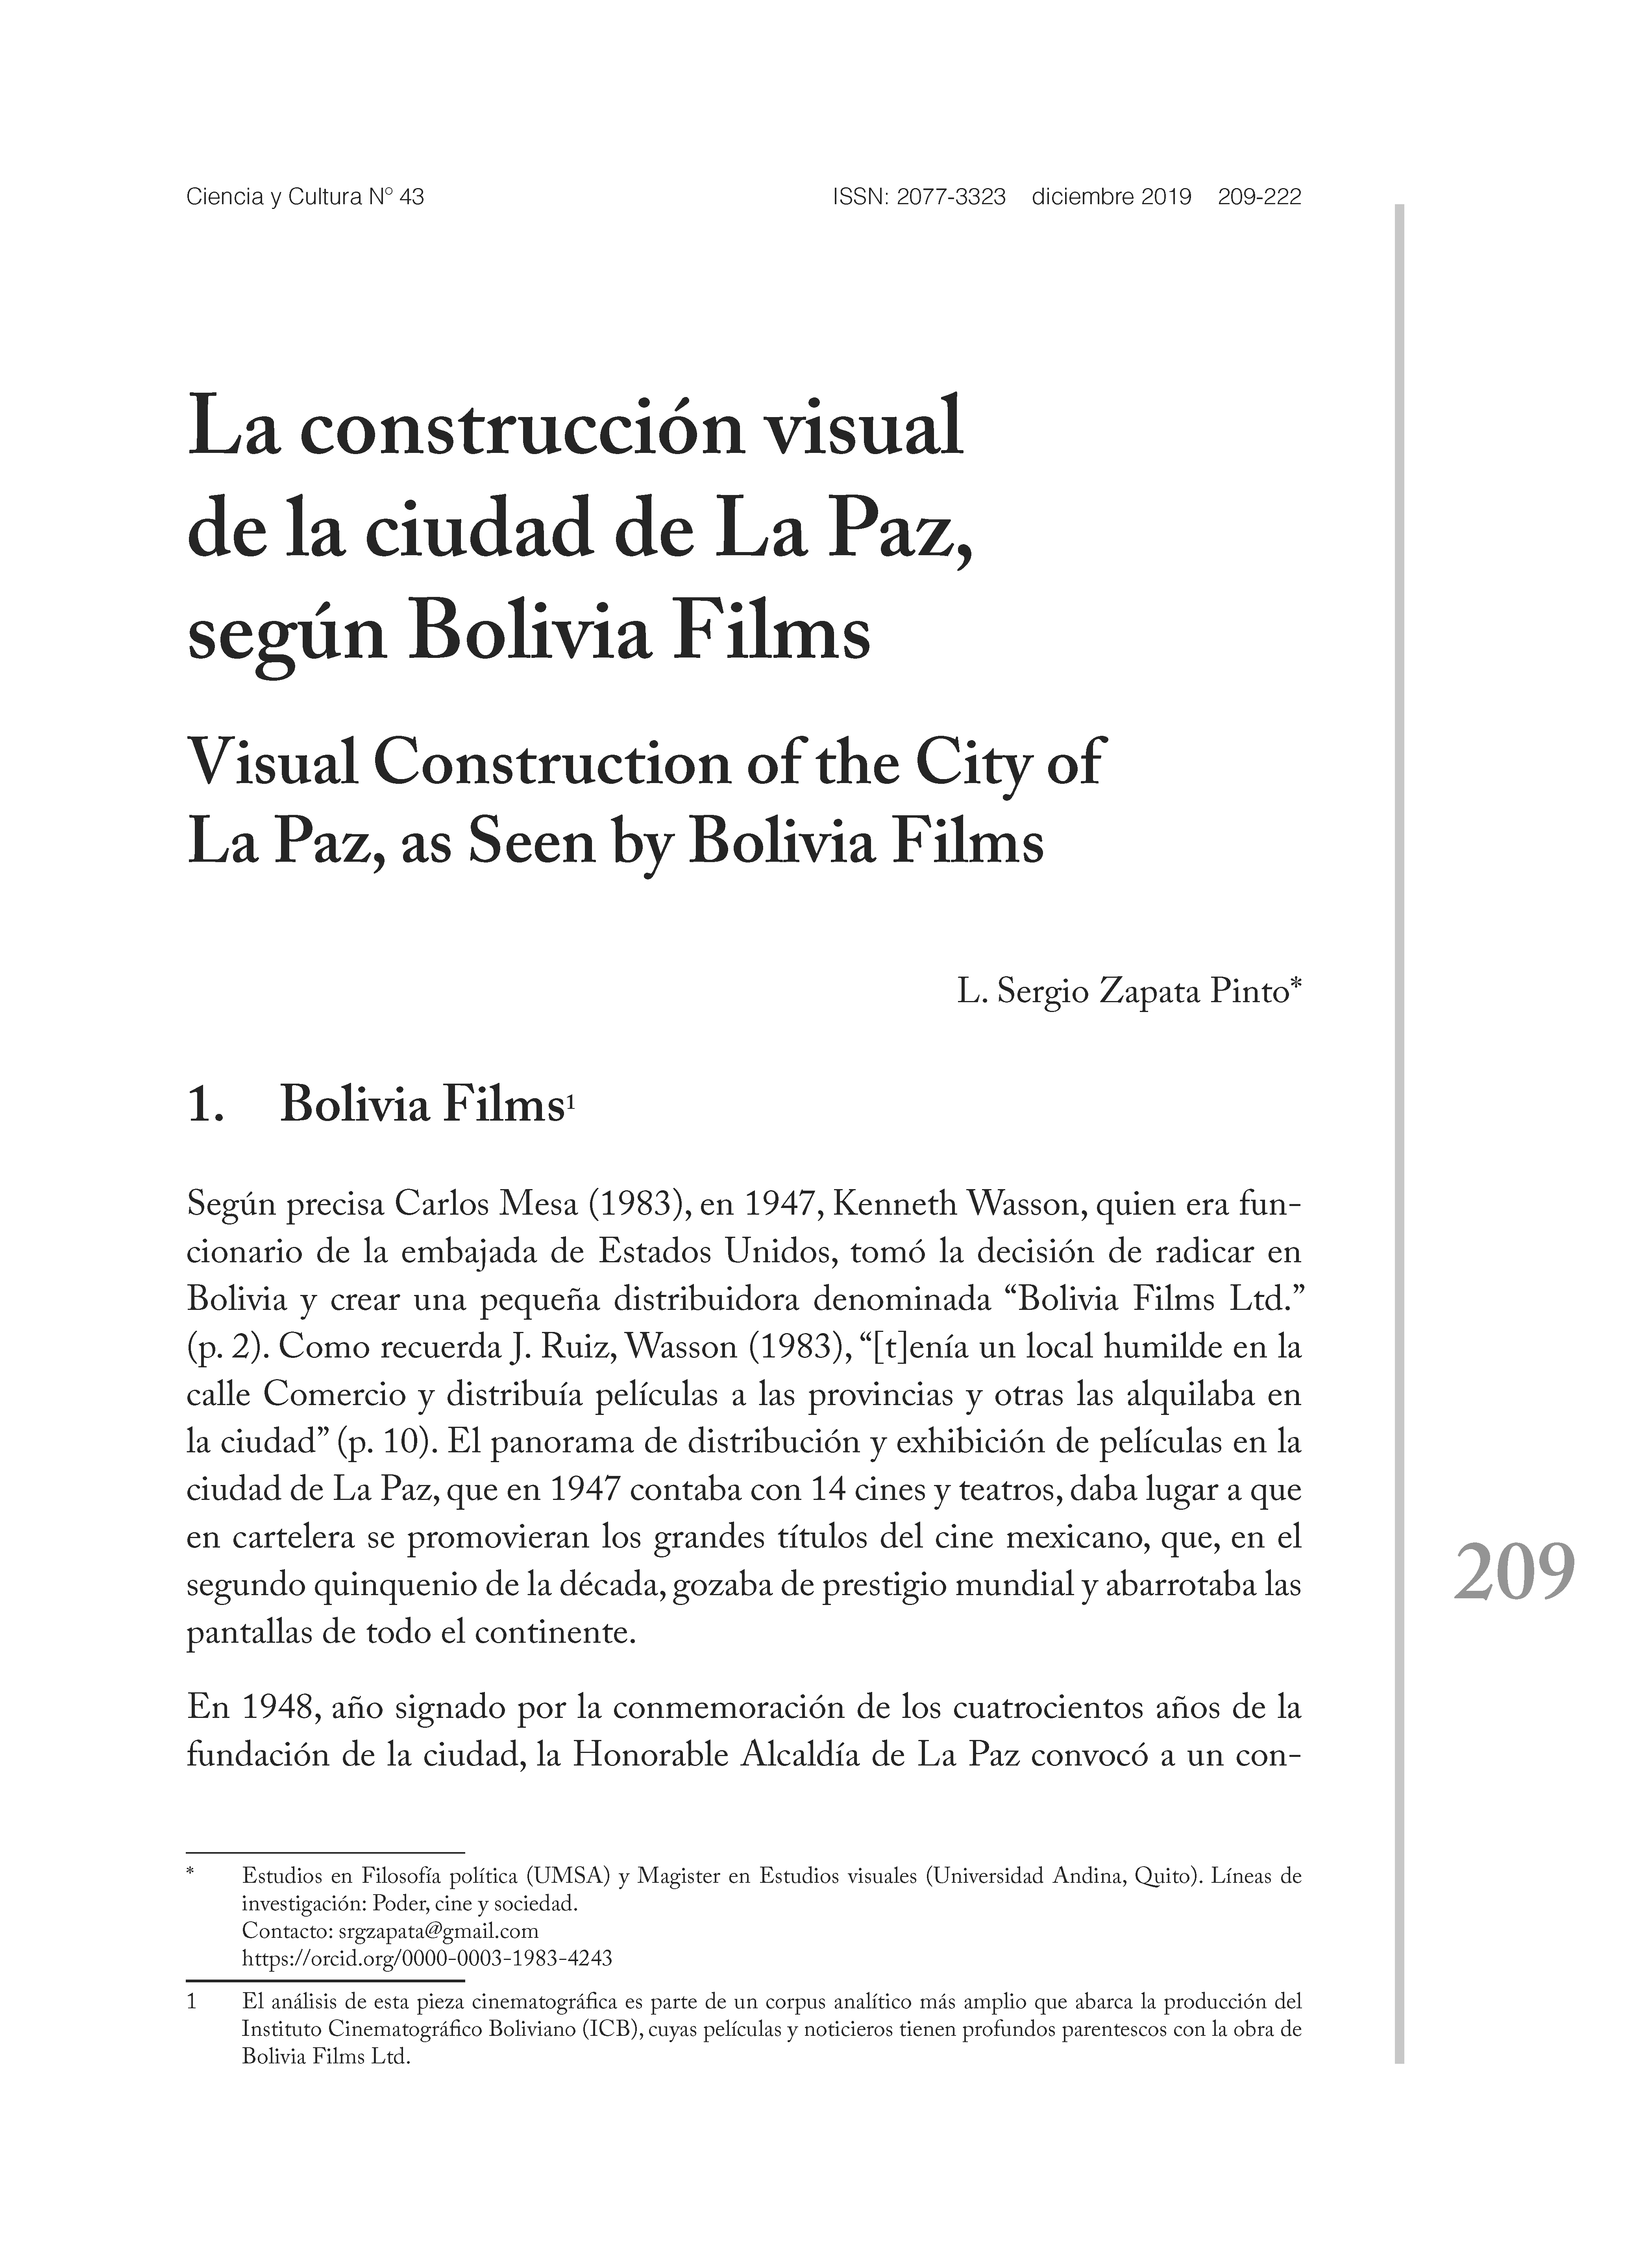 La construcción visual de la ciudad de La Paz, según Bolivia Films